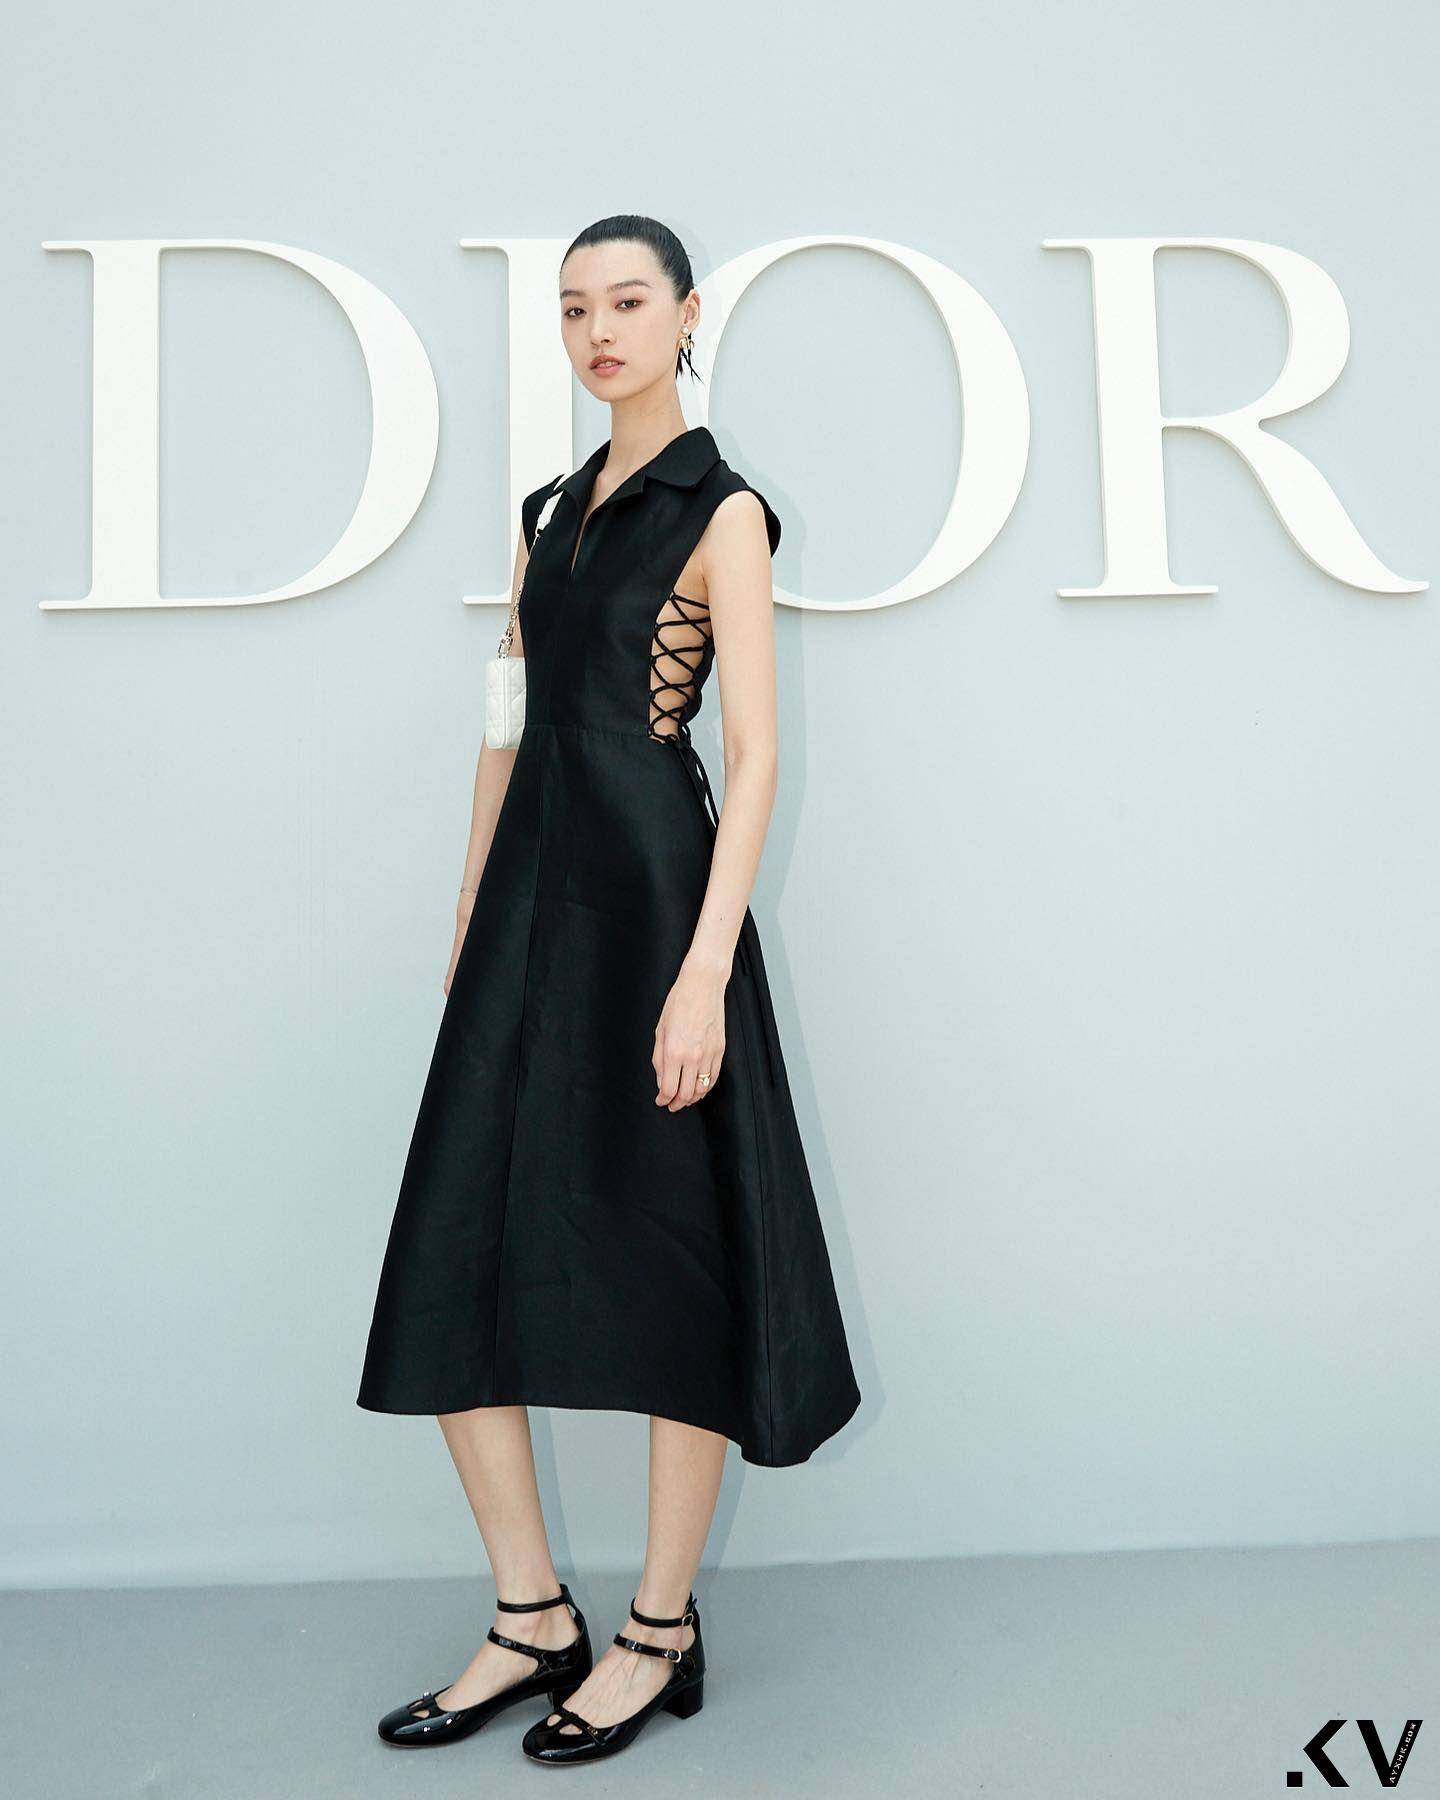 张艾嘉准媳妇是爱马仕、Dior钦点超模　曾进全球Top 50名模排行榜 时尚穿搭 图3张